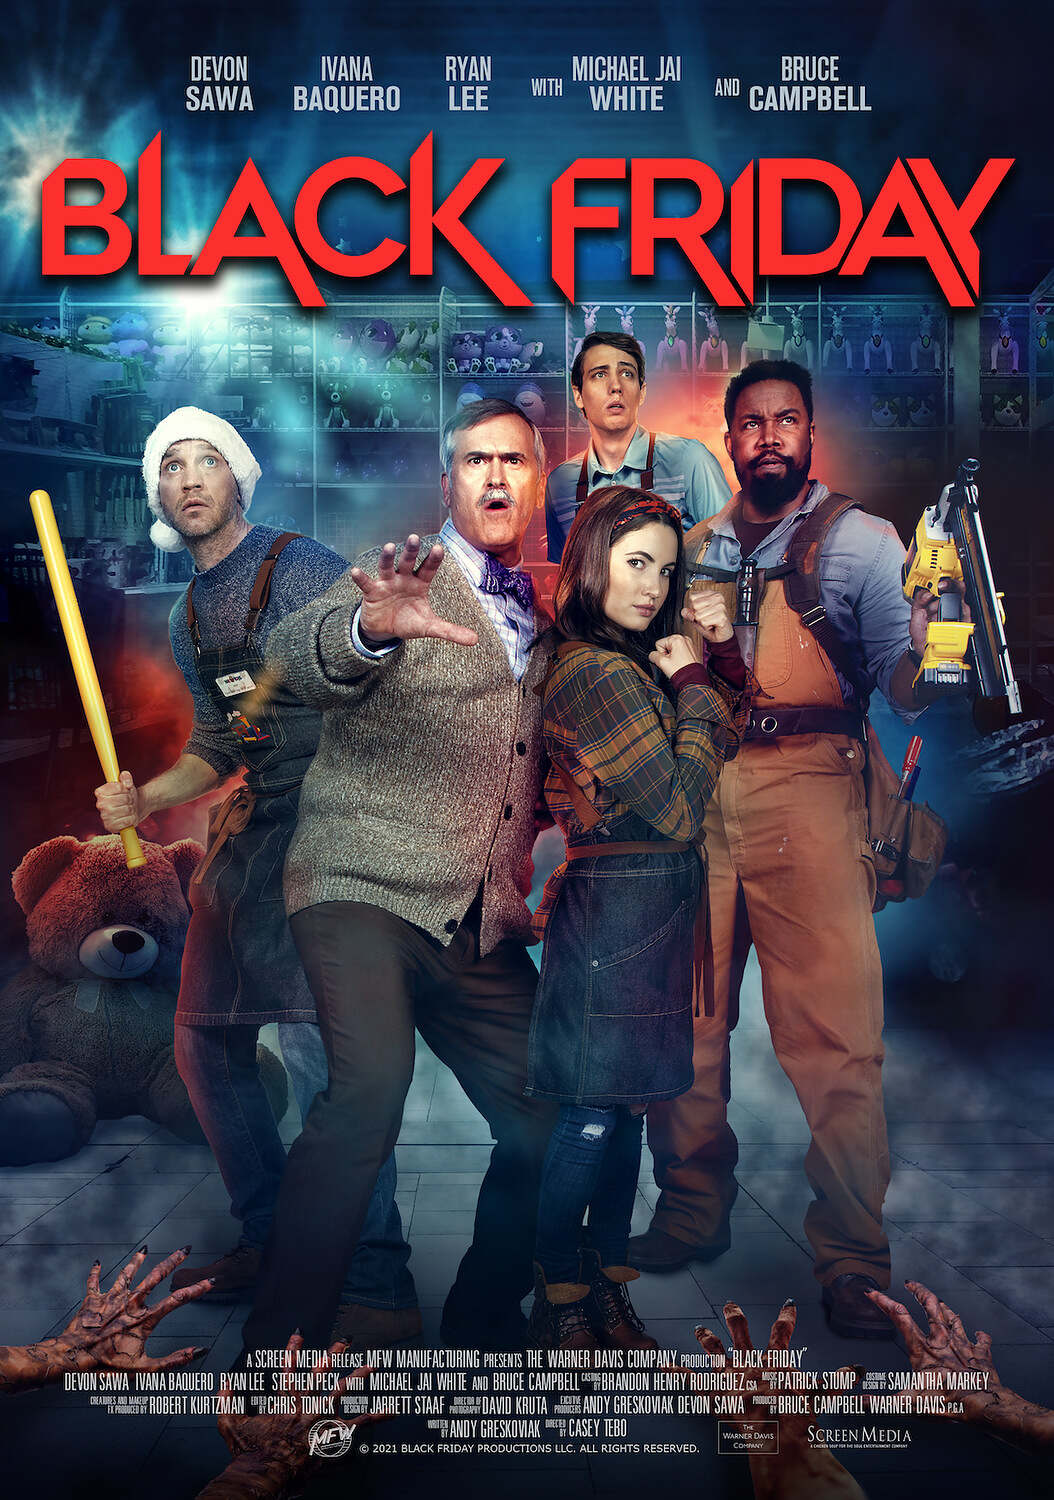 1st Trailer For ‘Black Friday’ Movie Starring Bruce Campbell & Michael Jai White